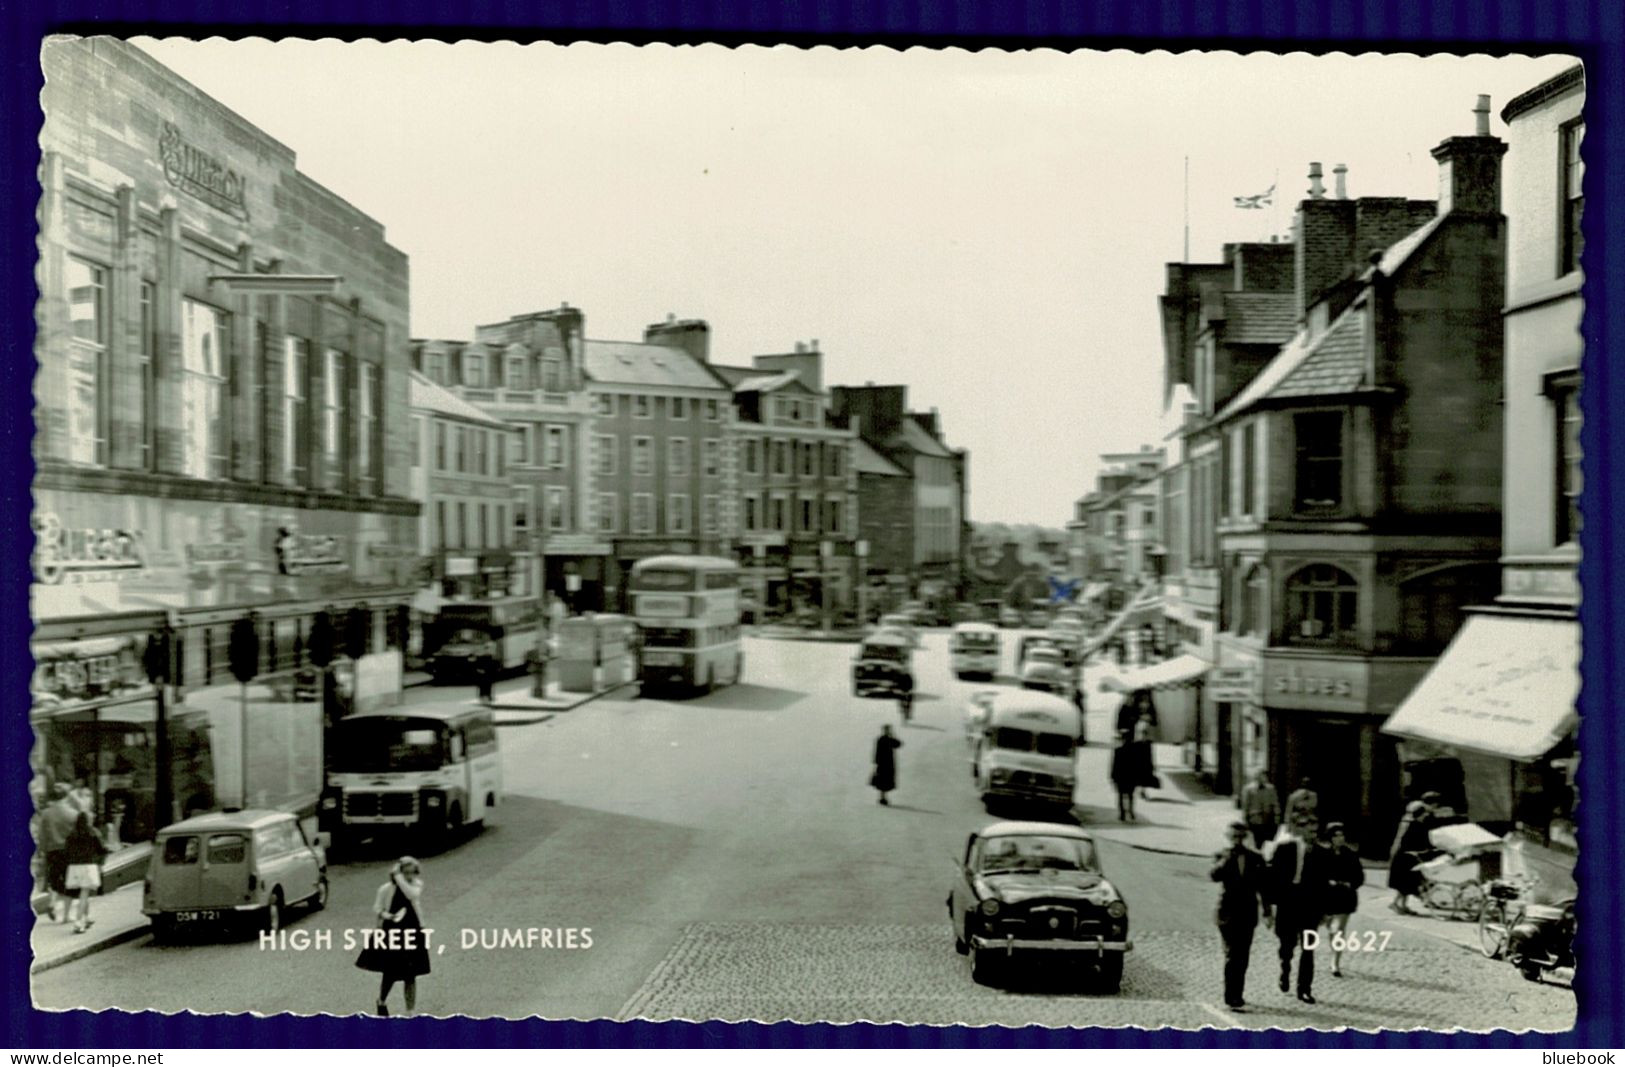 Ref 1638 - Real Photo Postcard - Cars & Vans - High Street Dumfries - Dumfries & Galloway - Dumfriesshire